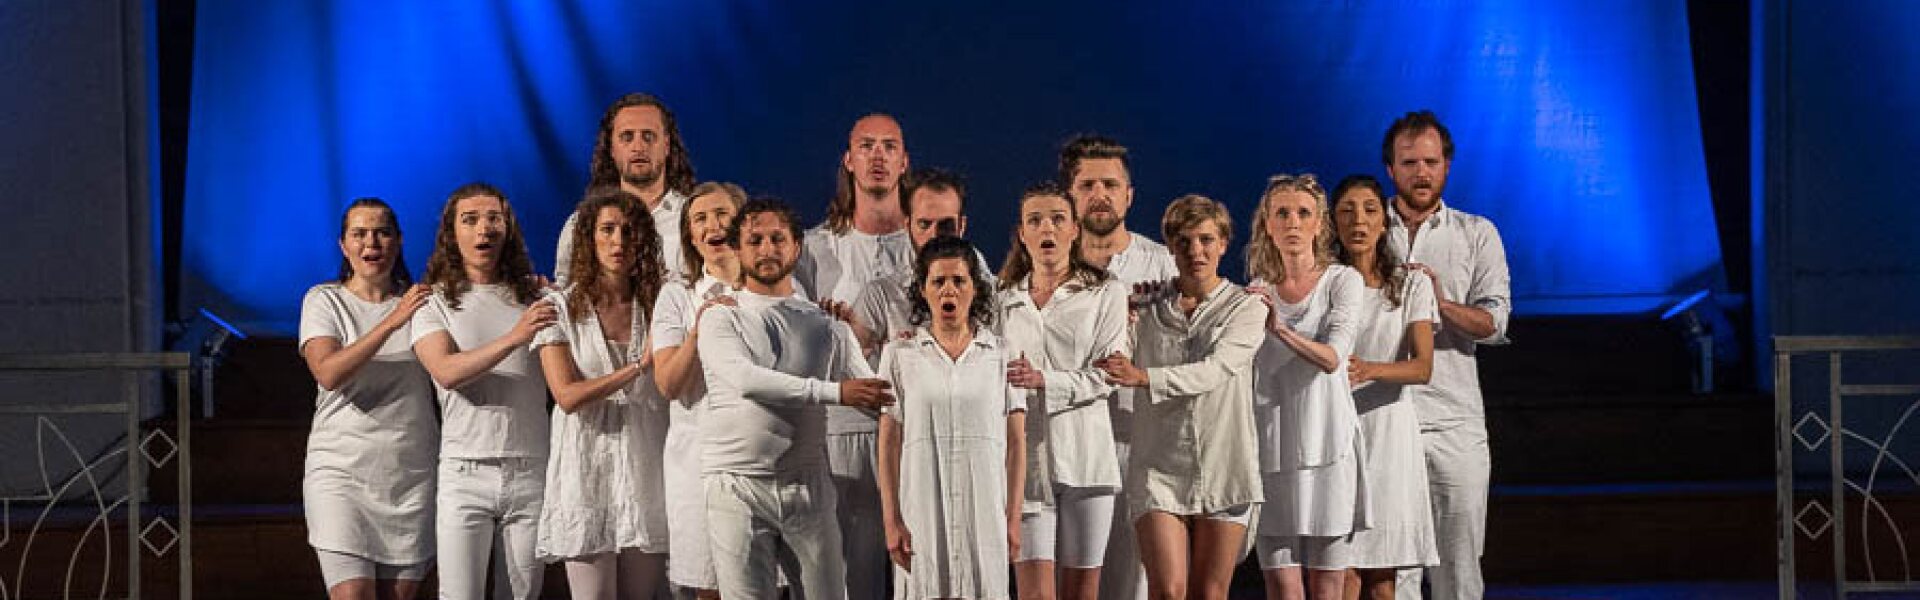 Theater-Gruppe in weißen Kleidern